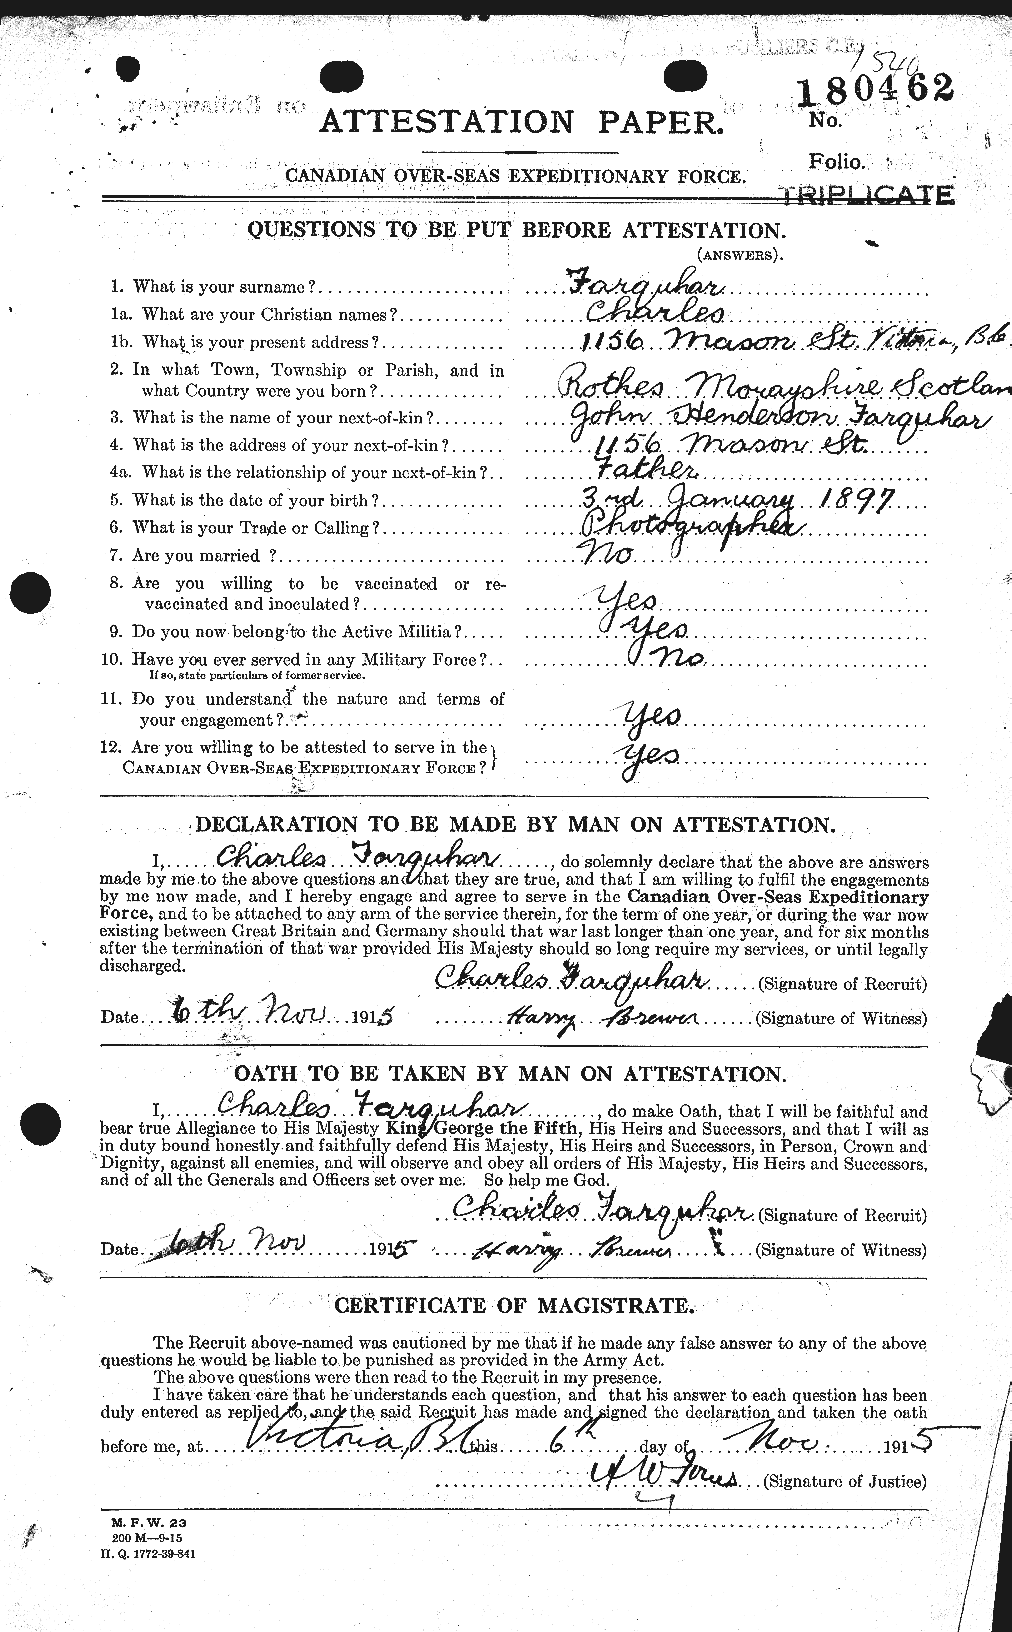 Dossiers du Personnel de la Première Guerre mondiale - CEC 318765a